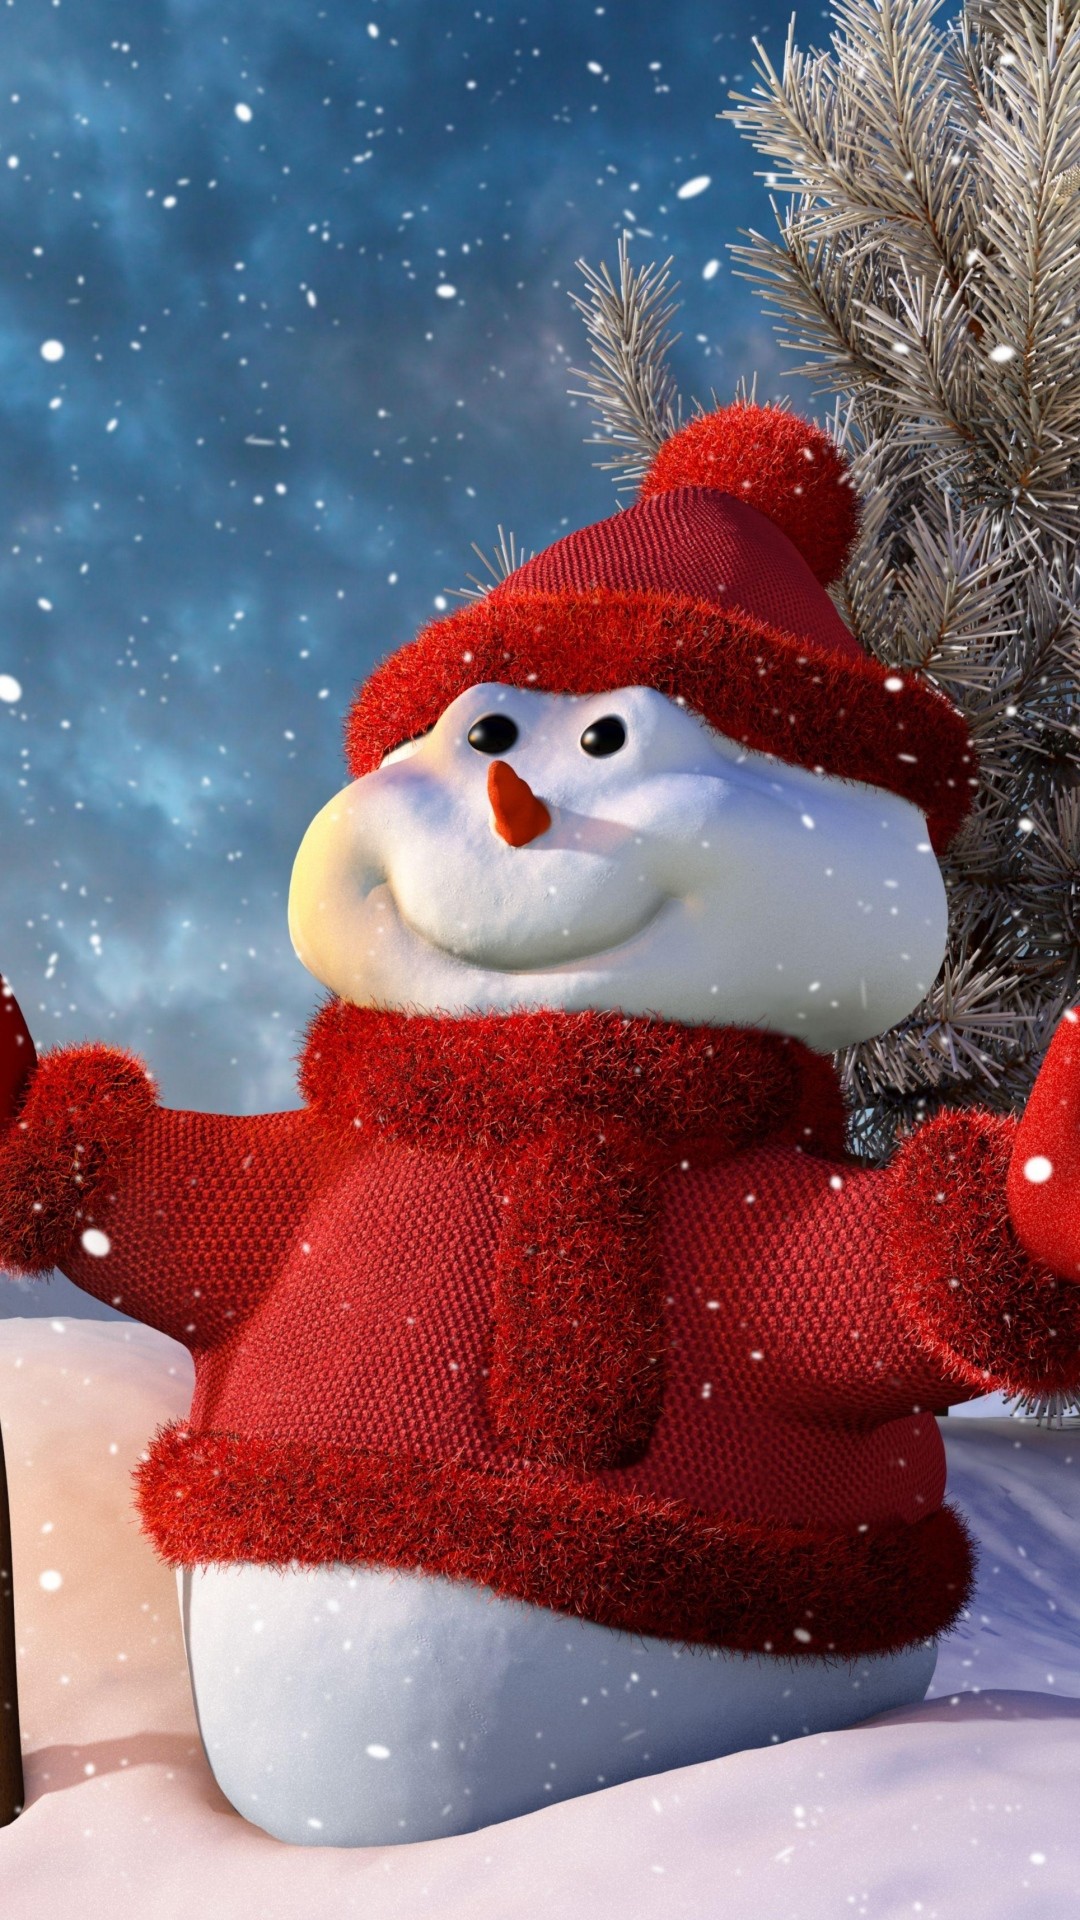 snowman wallpaper hd,snowman,santa claus,snow,winter,christmas